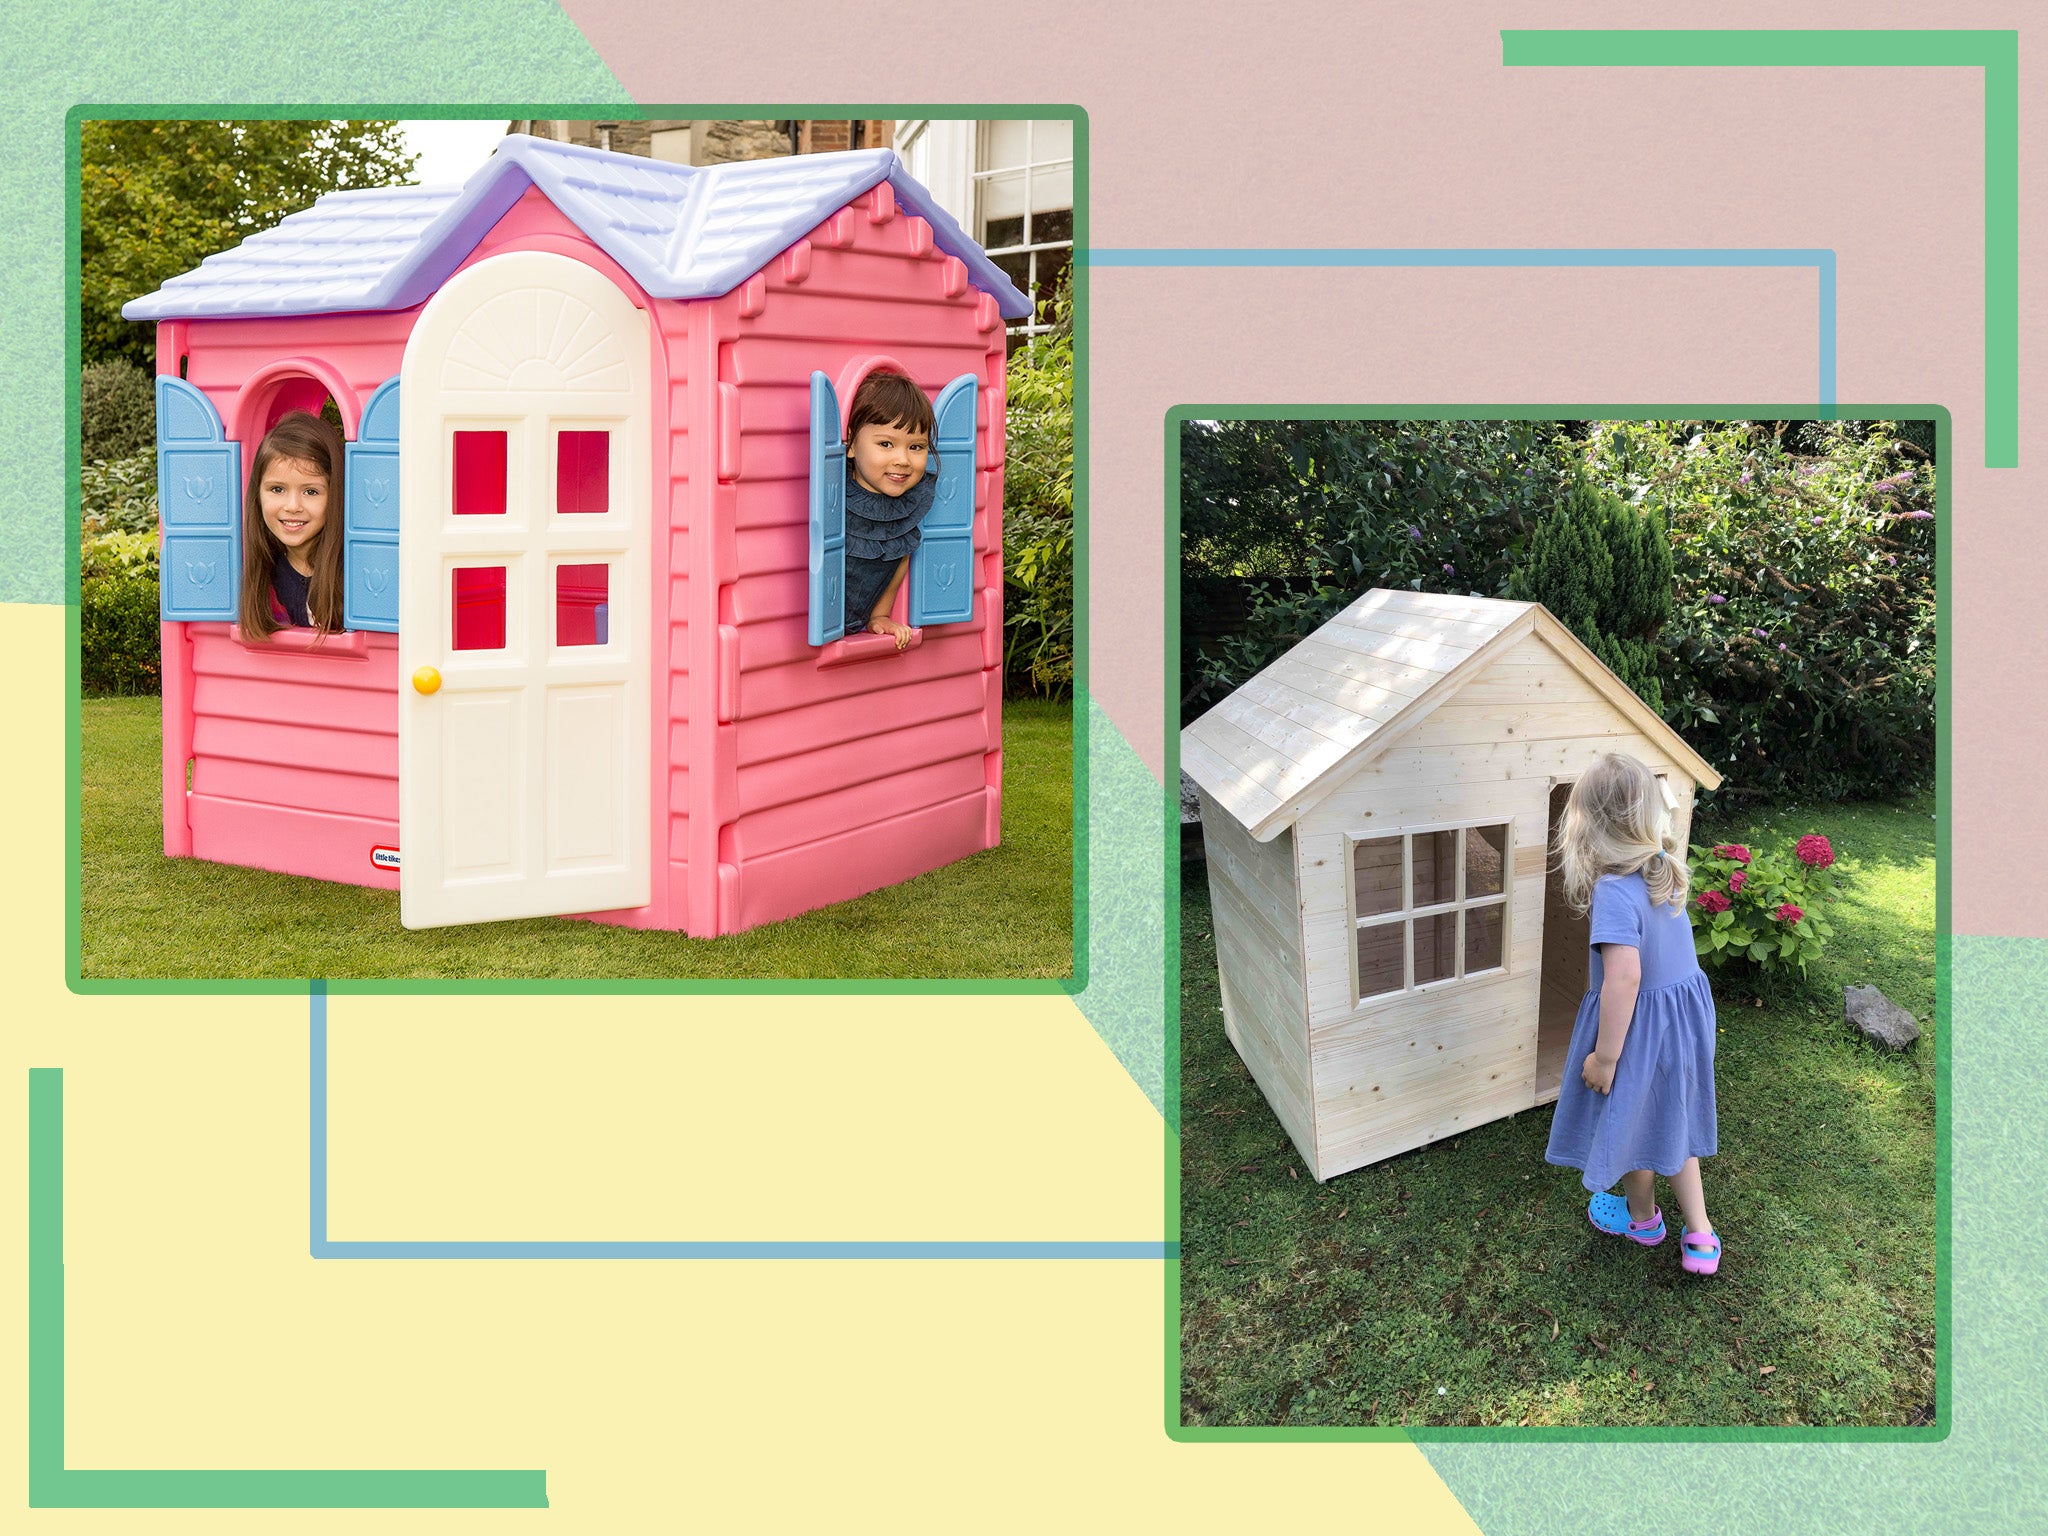 Details about   Unicorn Kids Playhouse Indoor Outdoor Garden Yard Pretend Play Playground Child 